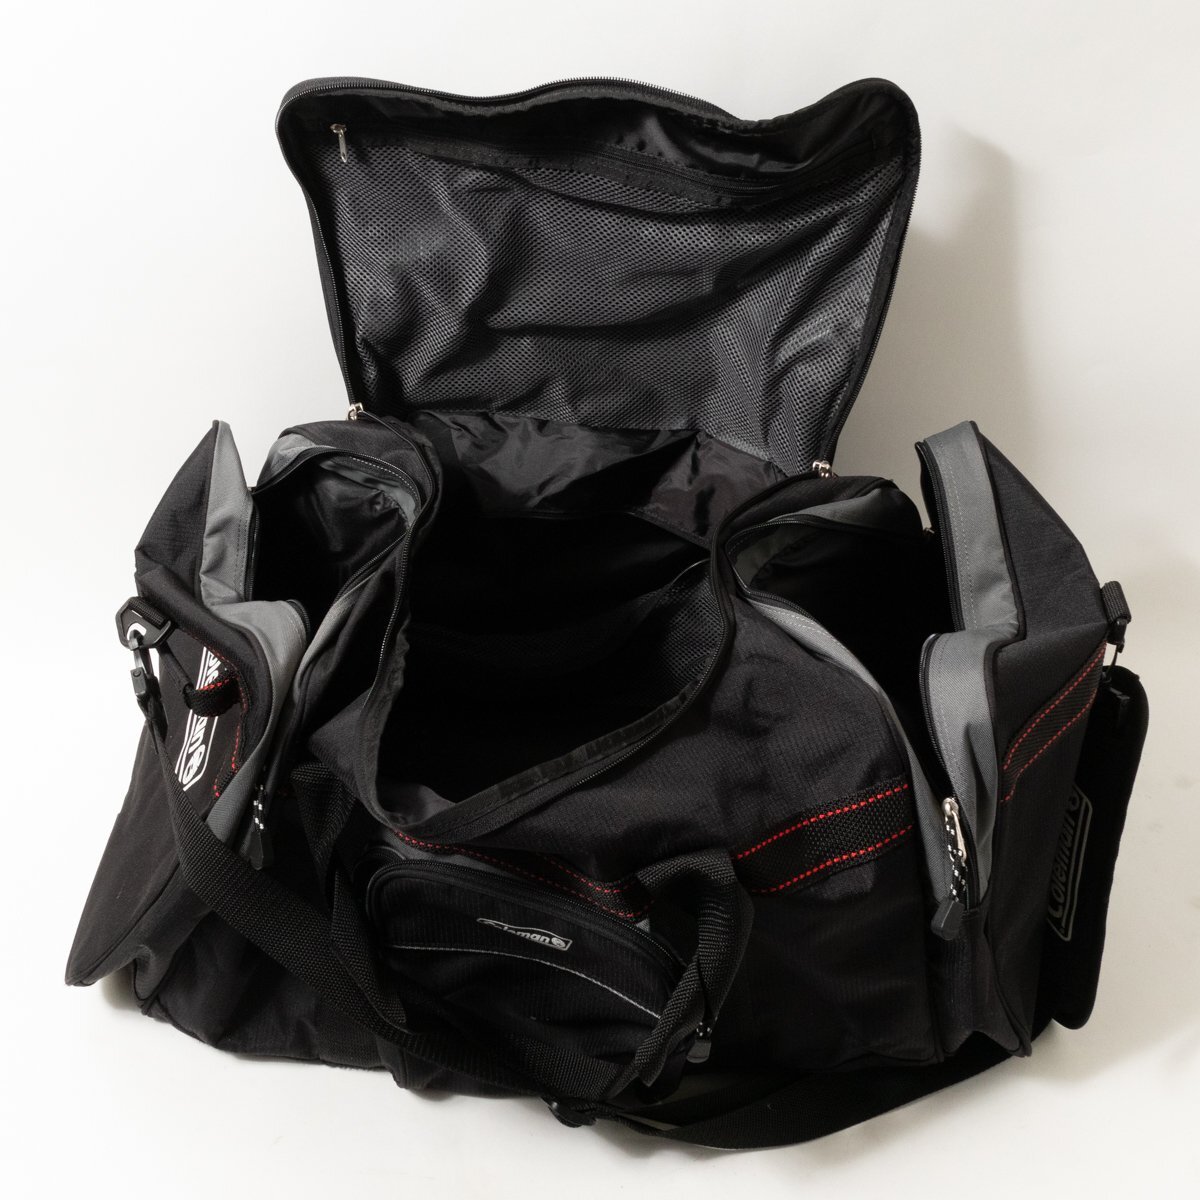 [1 иен старт ]Coleman Coleman сумка "Boston bag" сумка на плечо большая вместимость застежка-молния черный Great этикетка bag сумка унисекс 